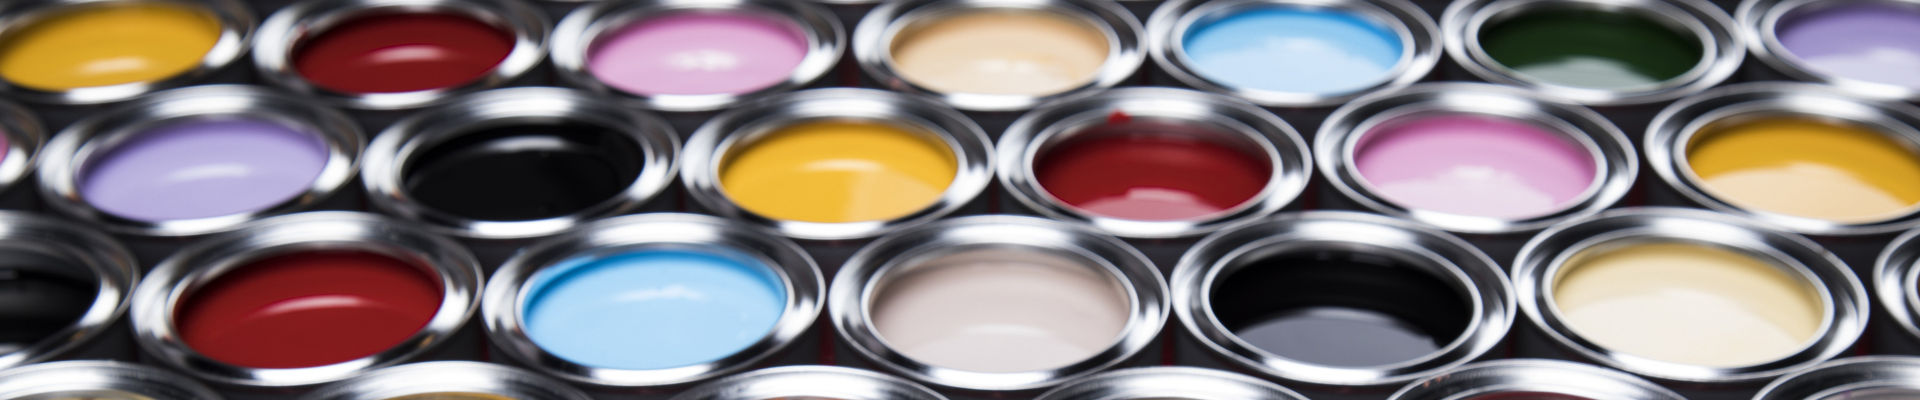 包含各种颜色油漆的大量开式油漆罐